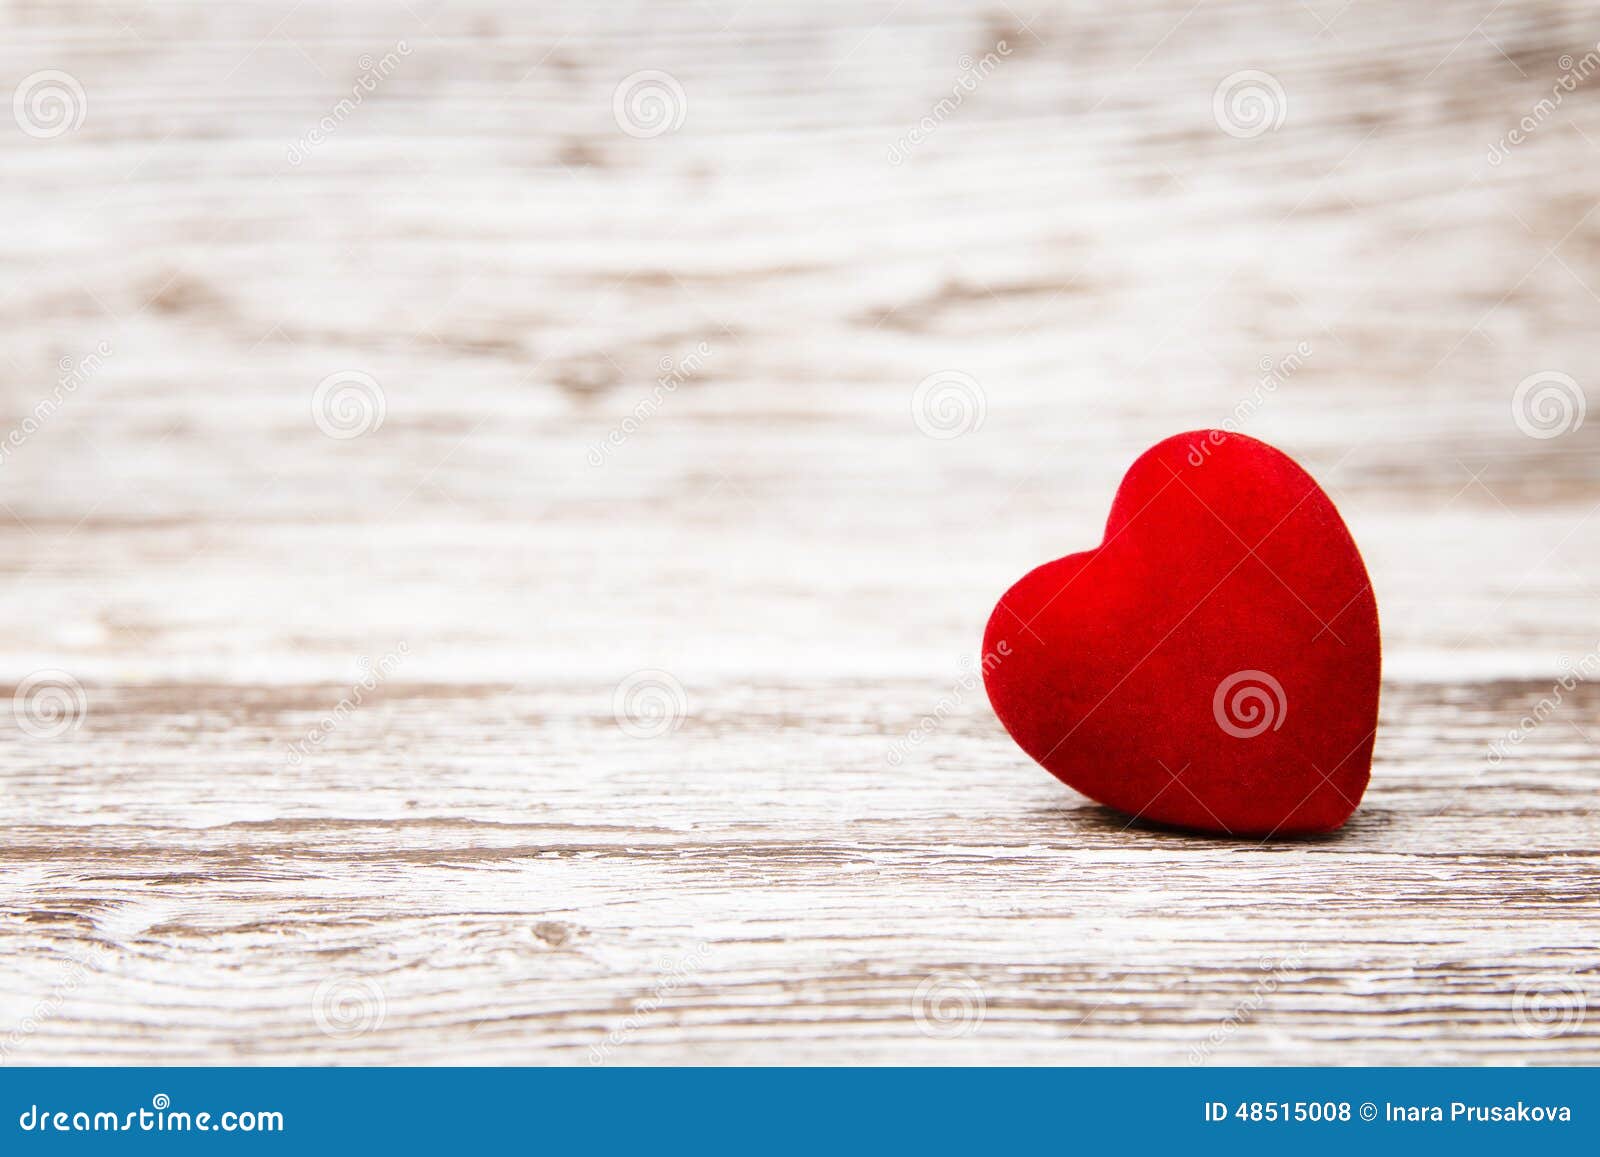 valentines background, heart wood, valentine day love